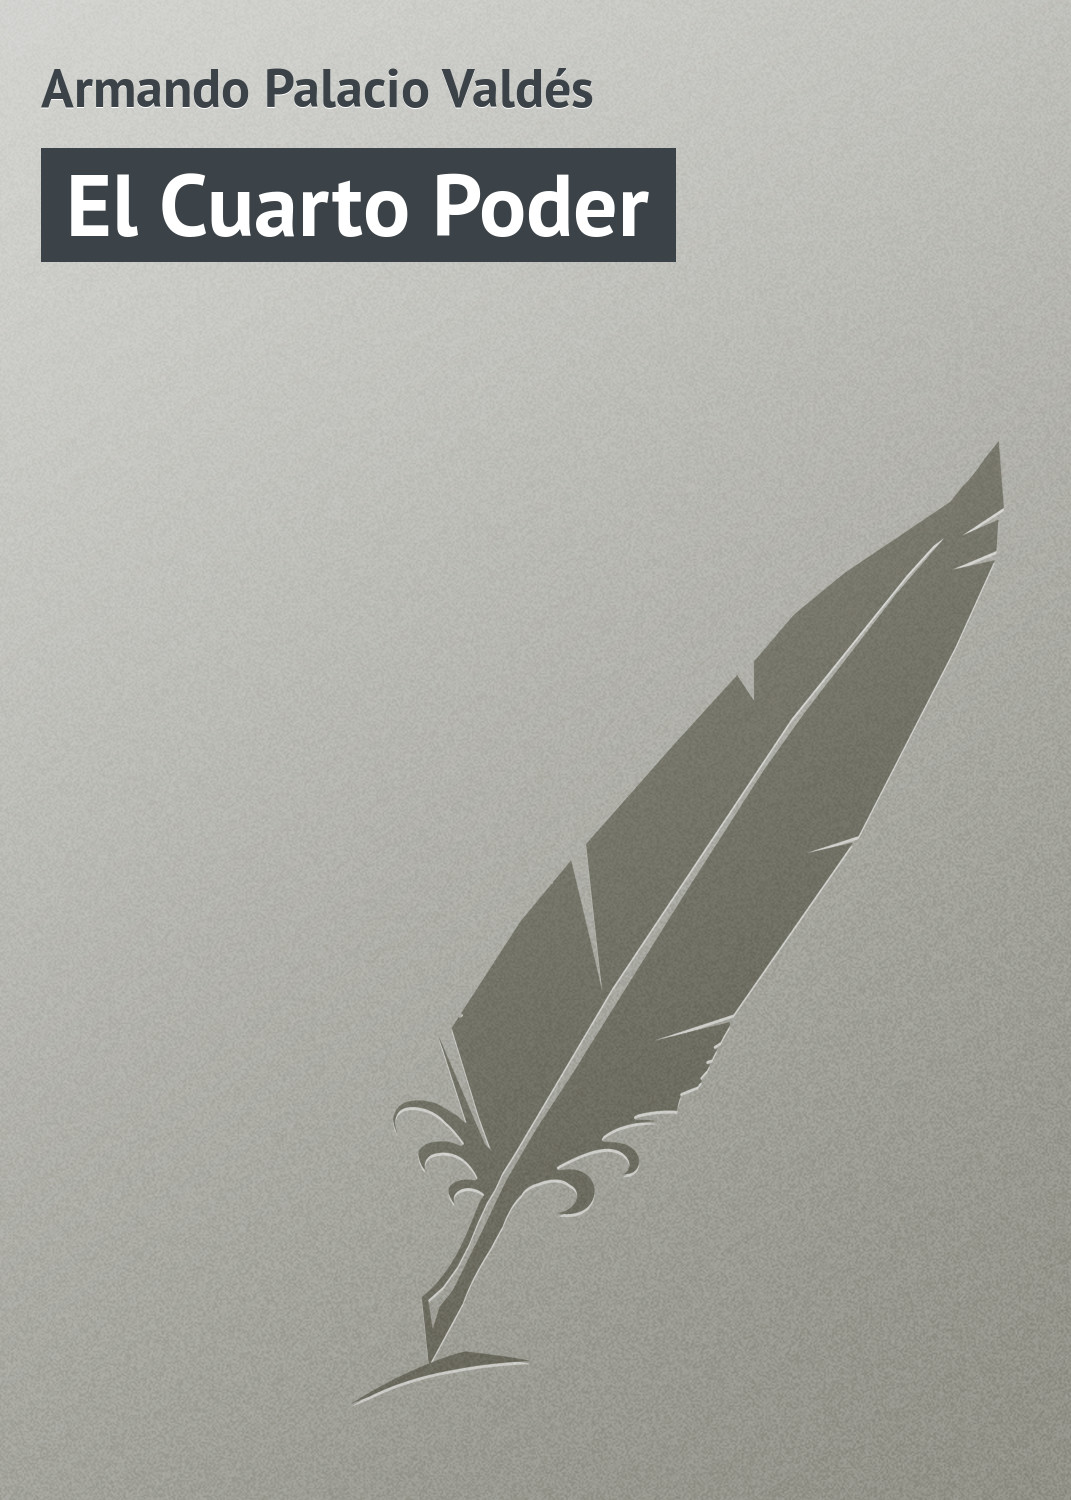 Книга El Cuarto Poder из серии , созданная Armando Palacio, может относится к жанру Зарубежная старинная литература, Зарубежная классика. Стоимость электронной книги El Cuarto Poder с идентификатором 21107782 составляет 5.99 руб.